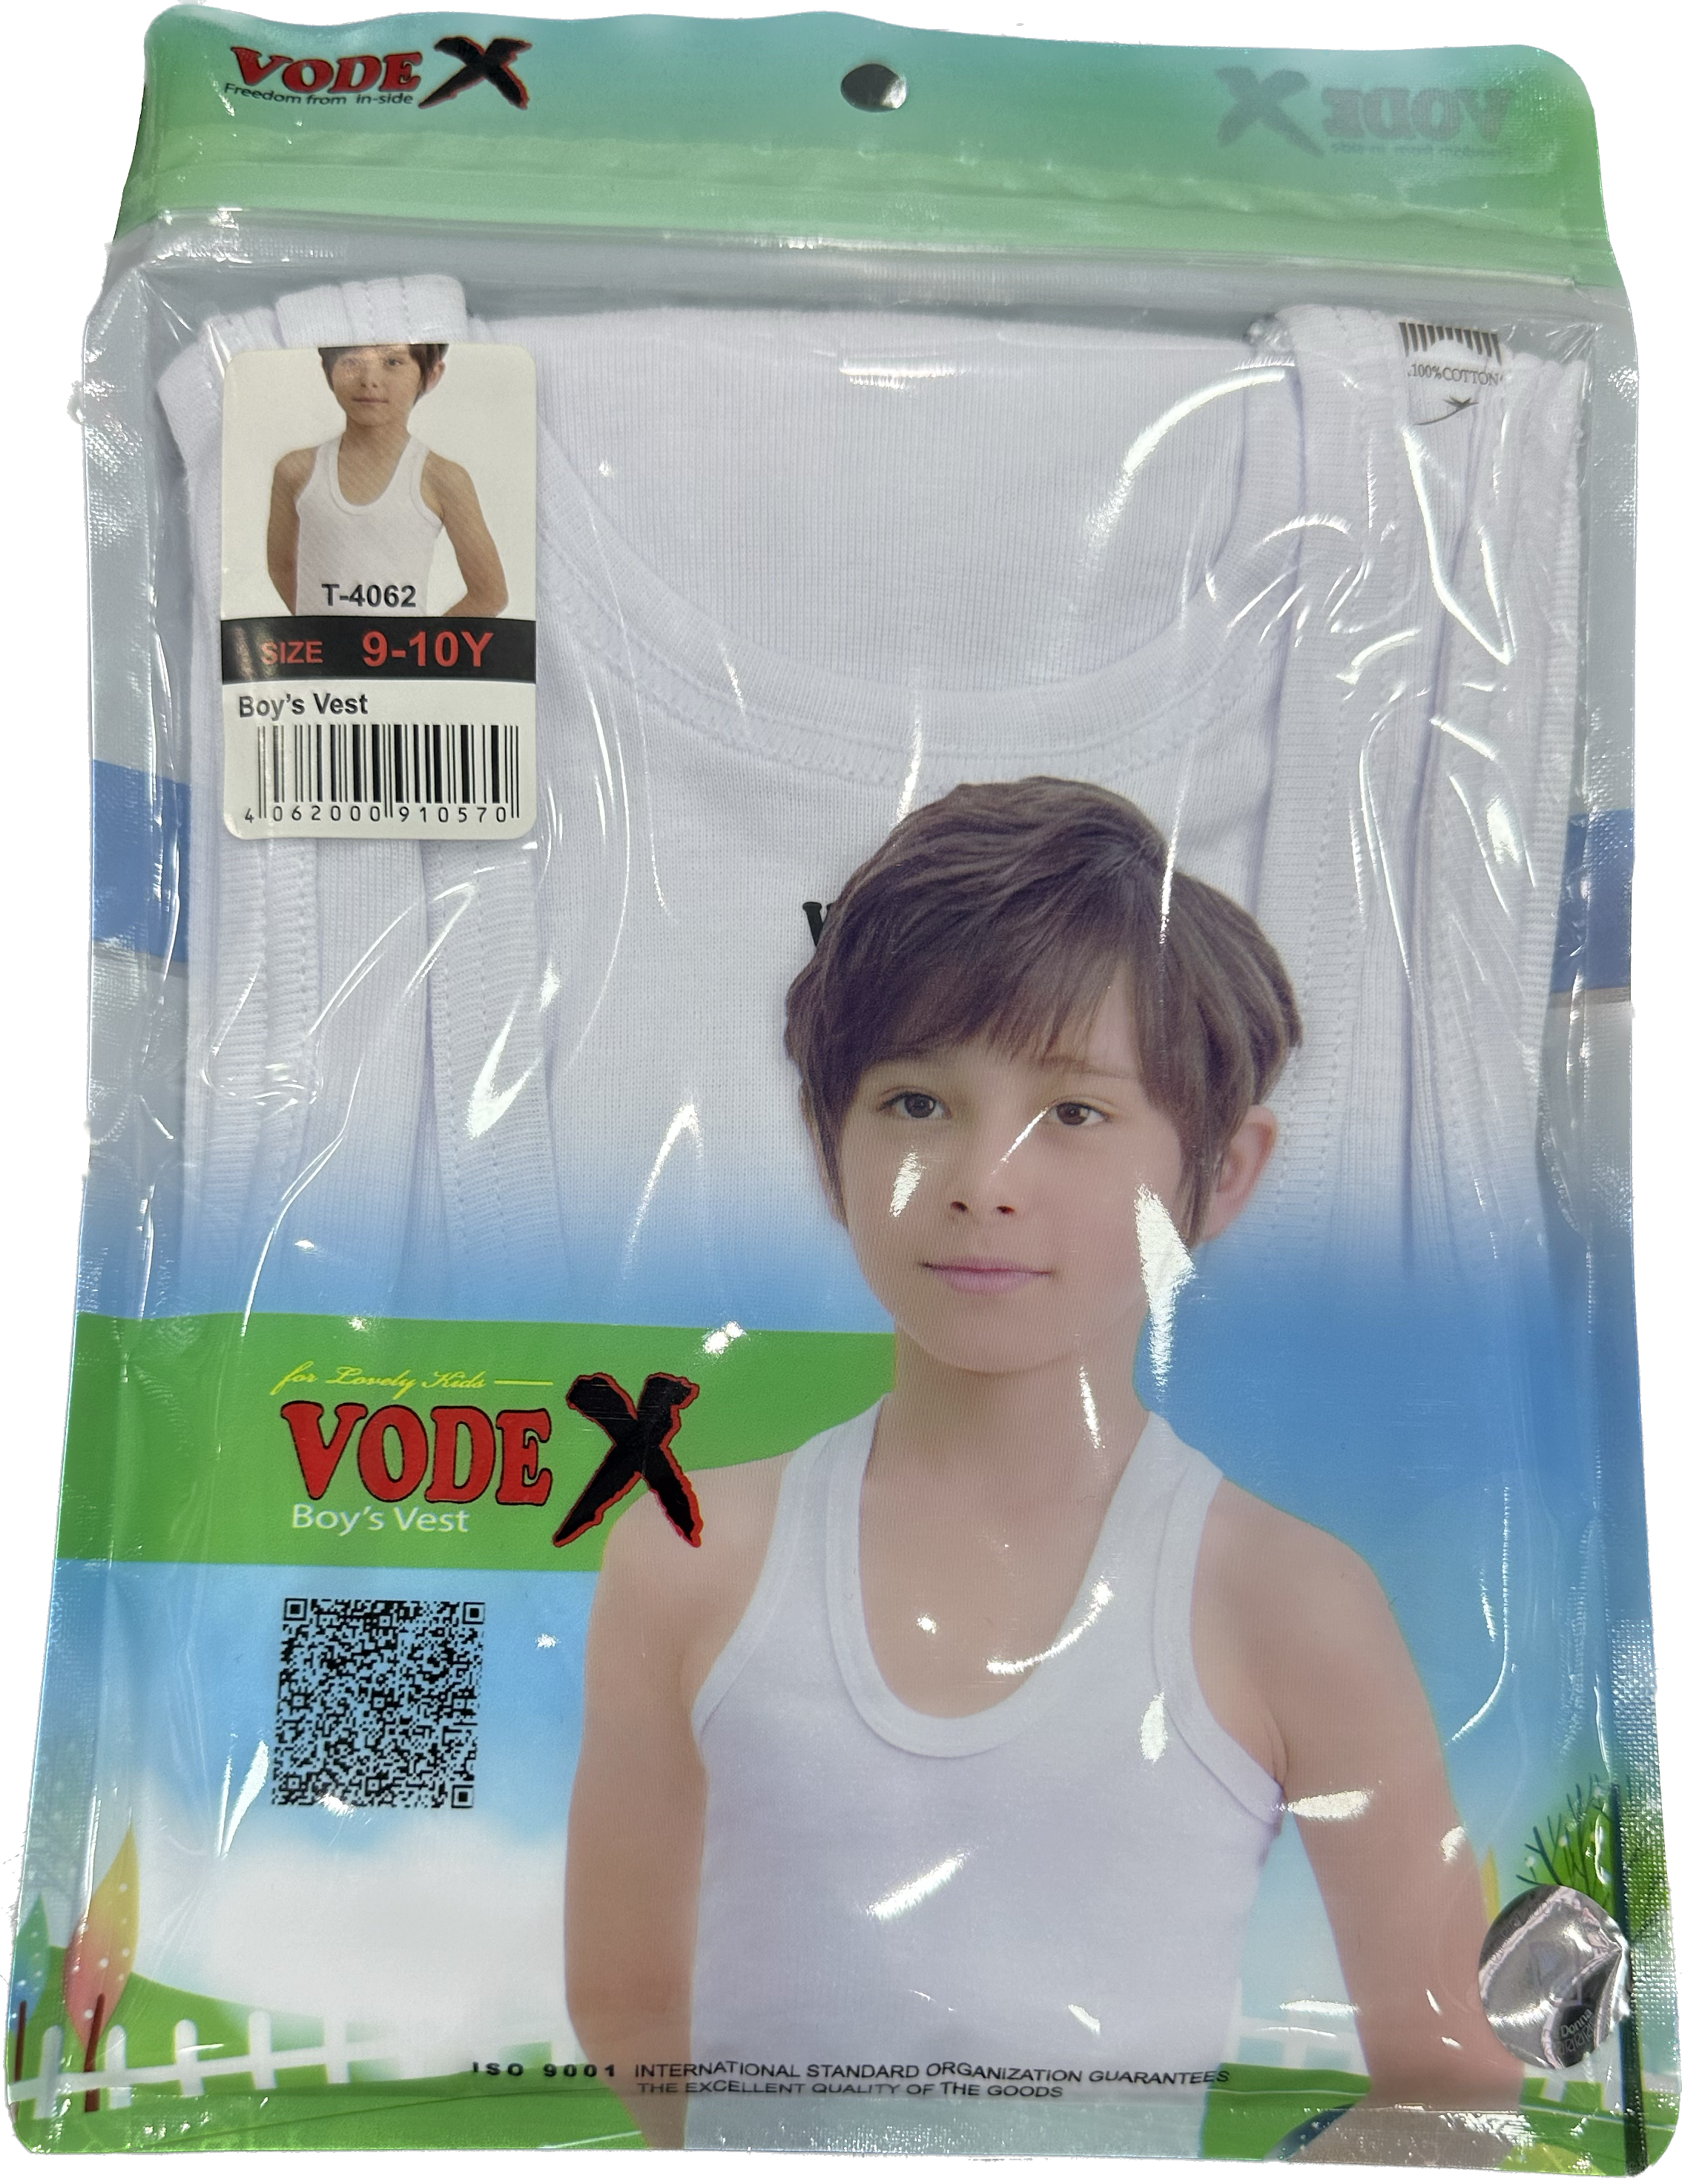 VODEX Boys Vest - Underwear white wholesale 12 pcs - carton